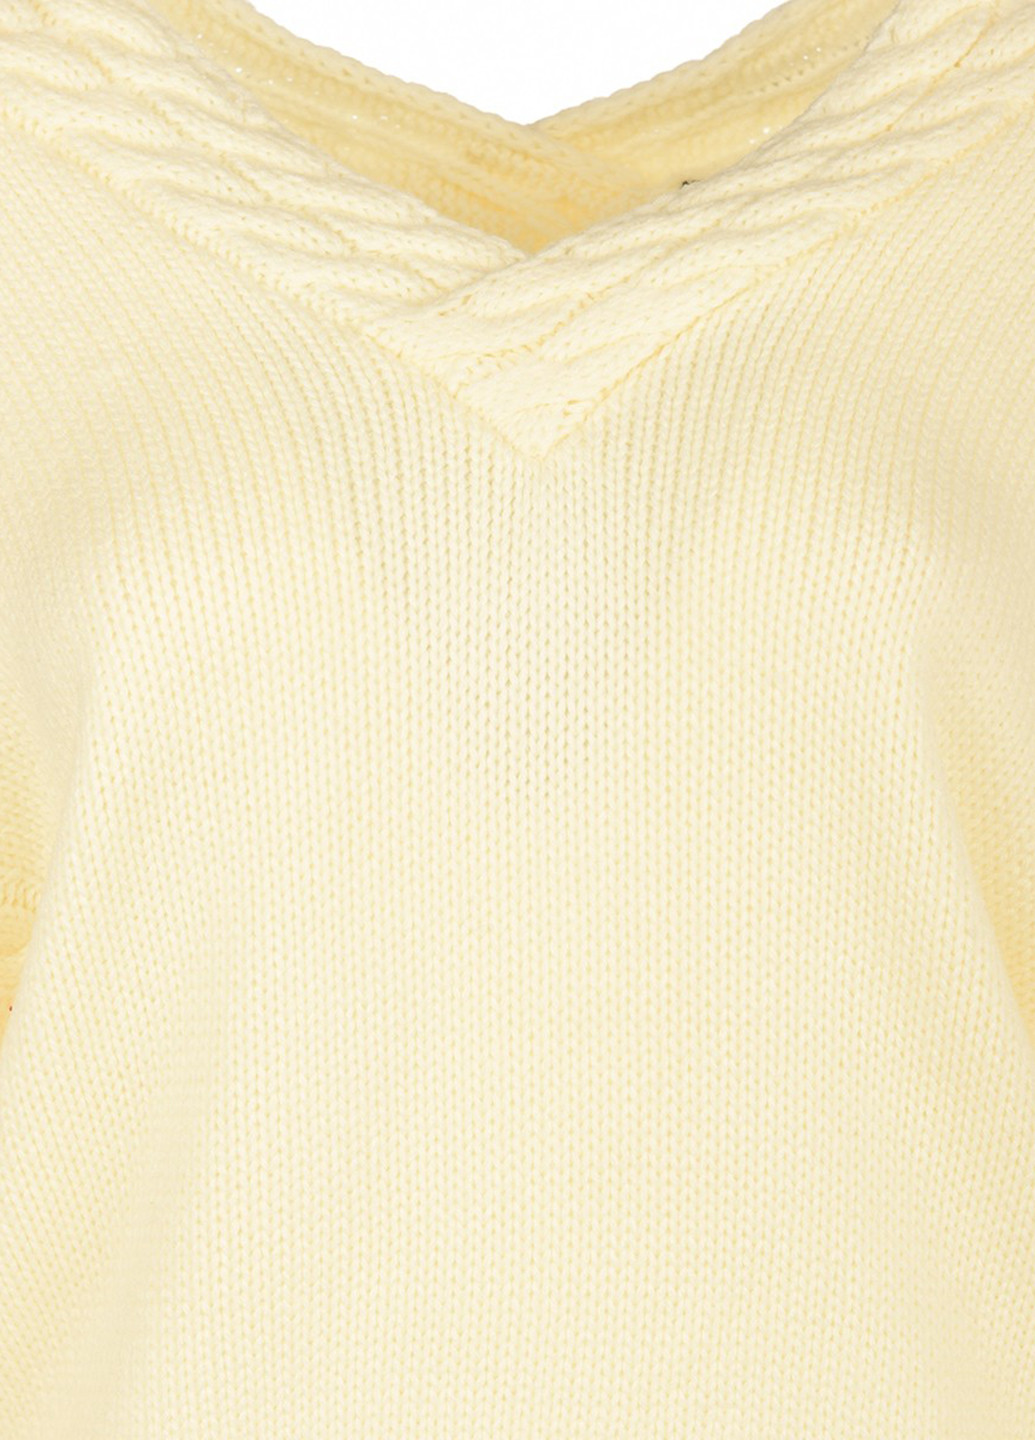 Молочный демисезонный джемпер пуловер LOVE REPUBLIC